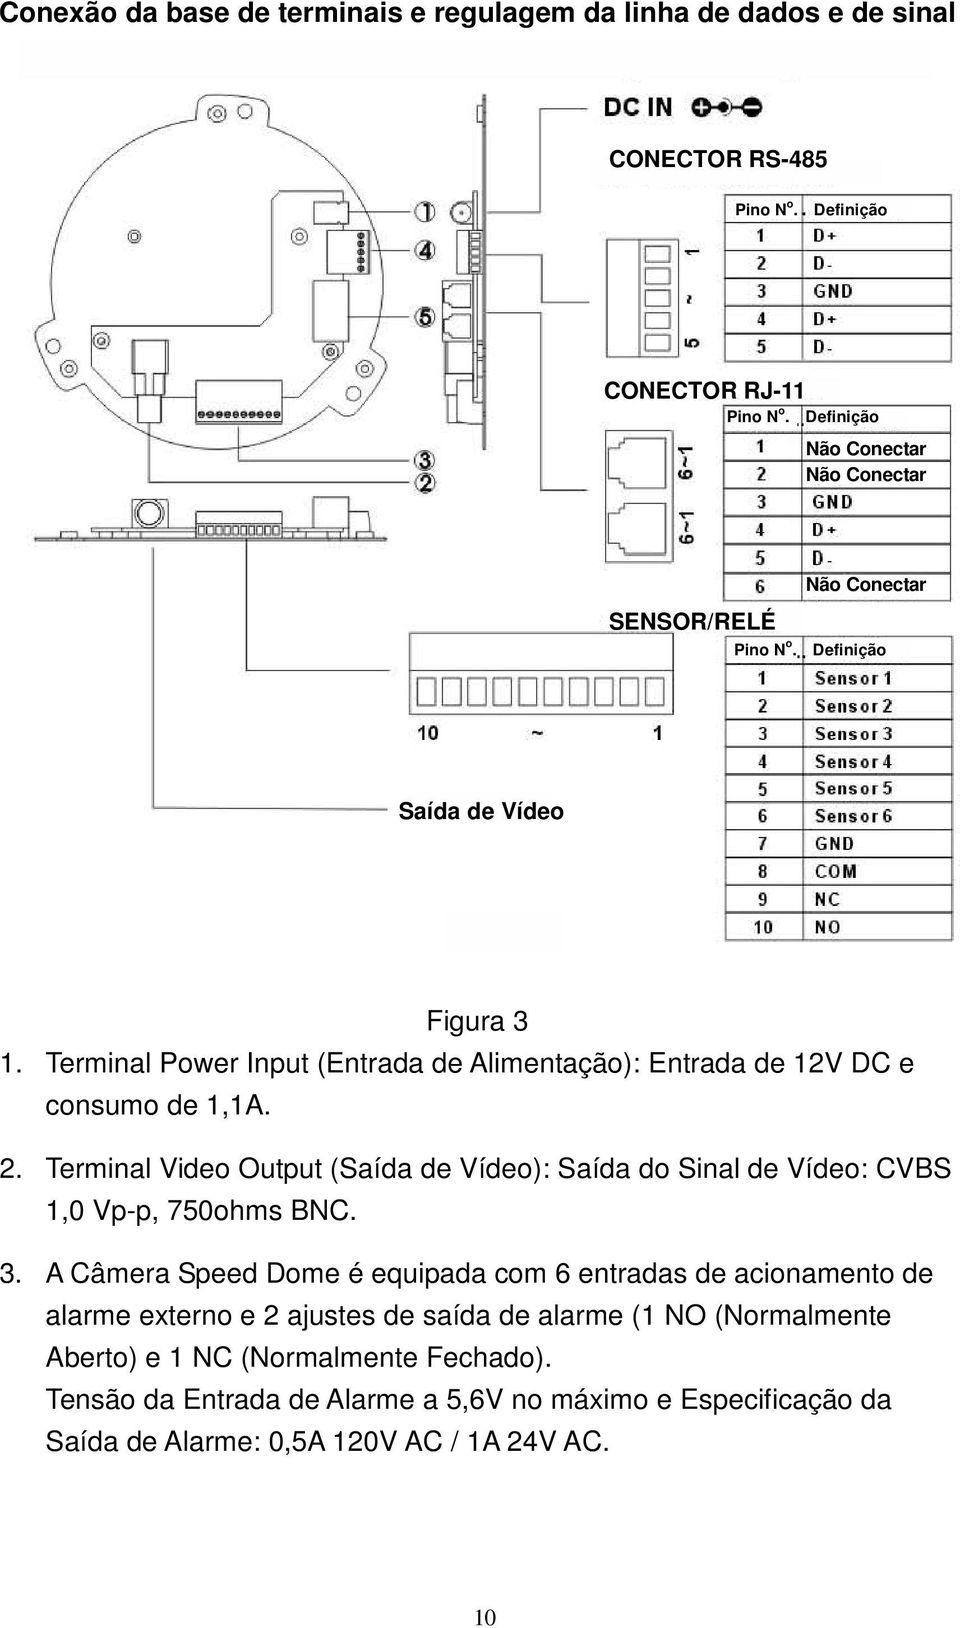 Terminal Power Input (Entrada de Alimentação): Entrada de 12V DC e consumo de 1,1A. 2.